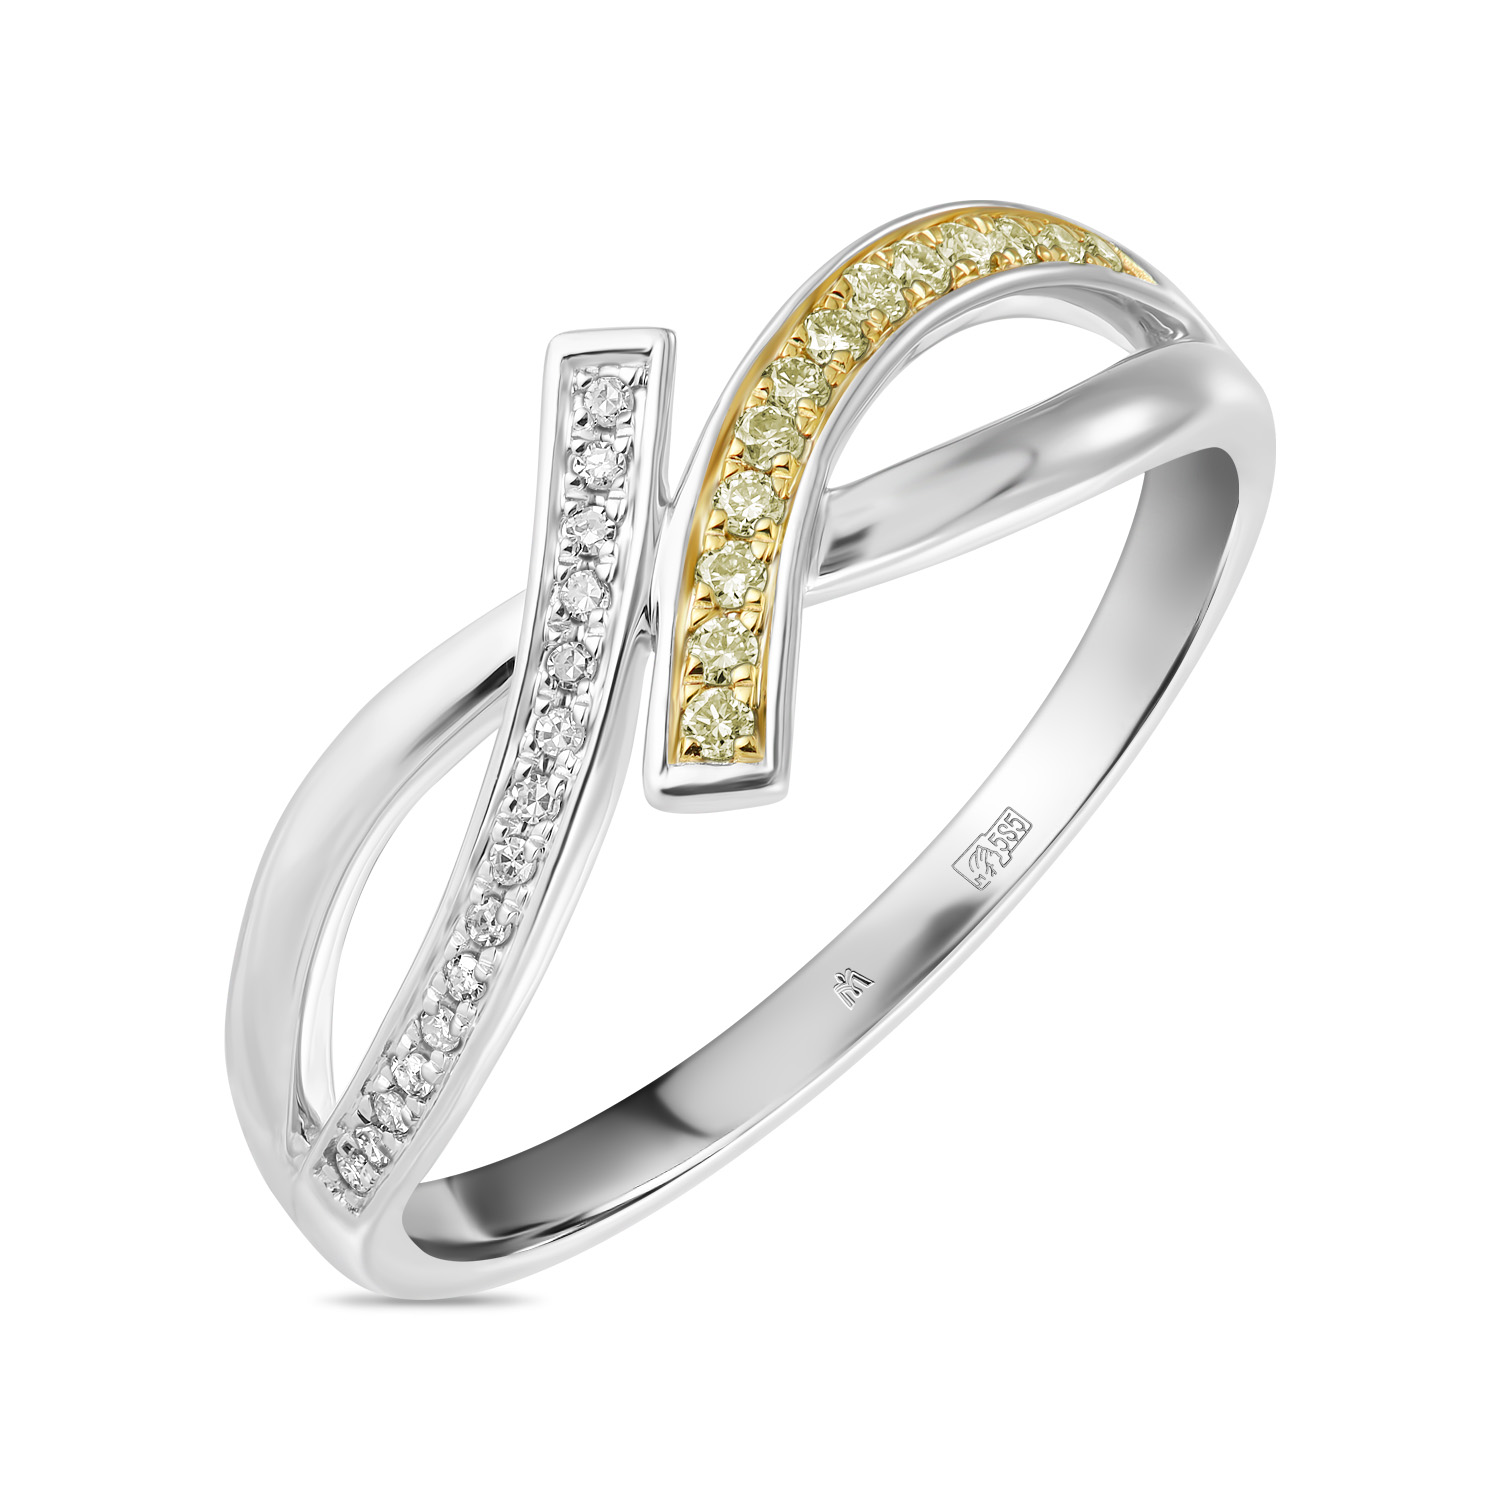 Кольца МЮЗ Кольцо с бриллиантами и цветными бриллиантами кольца мюз кольцо с бриллиантами и цветными бриллиантами